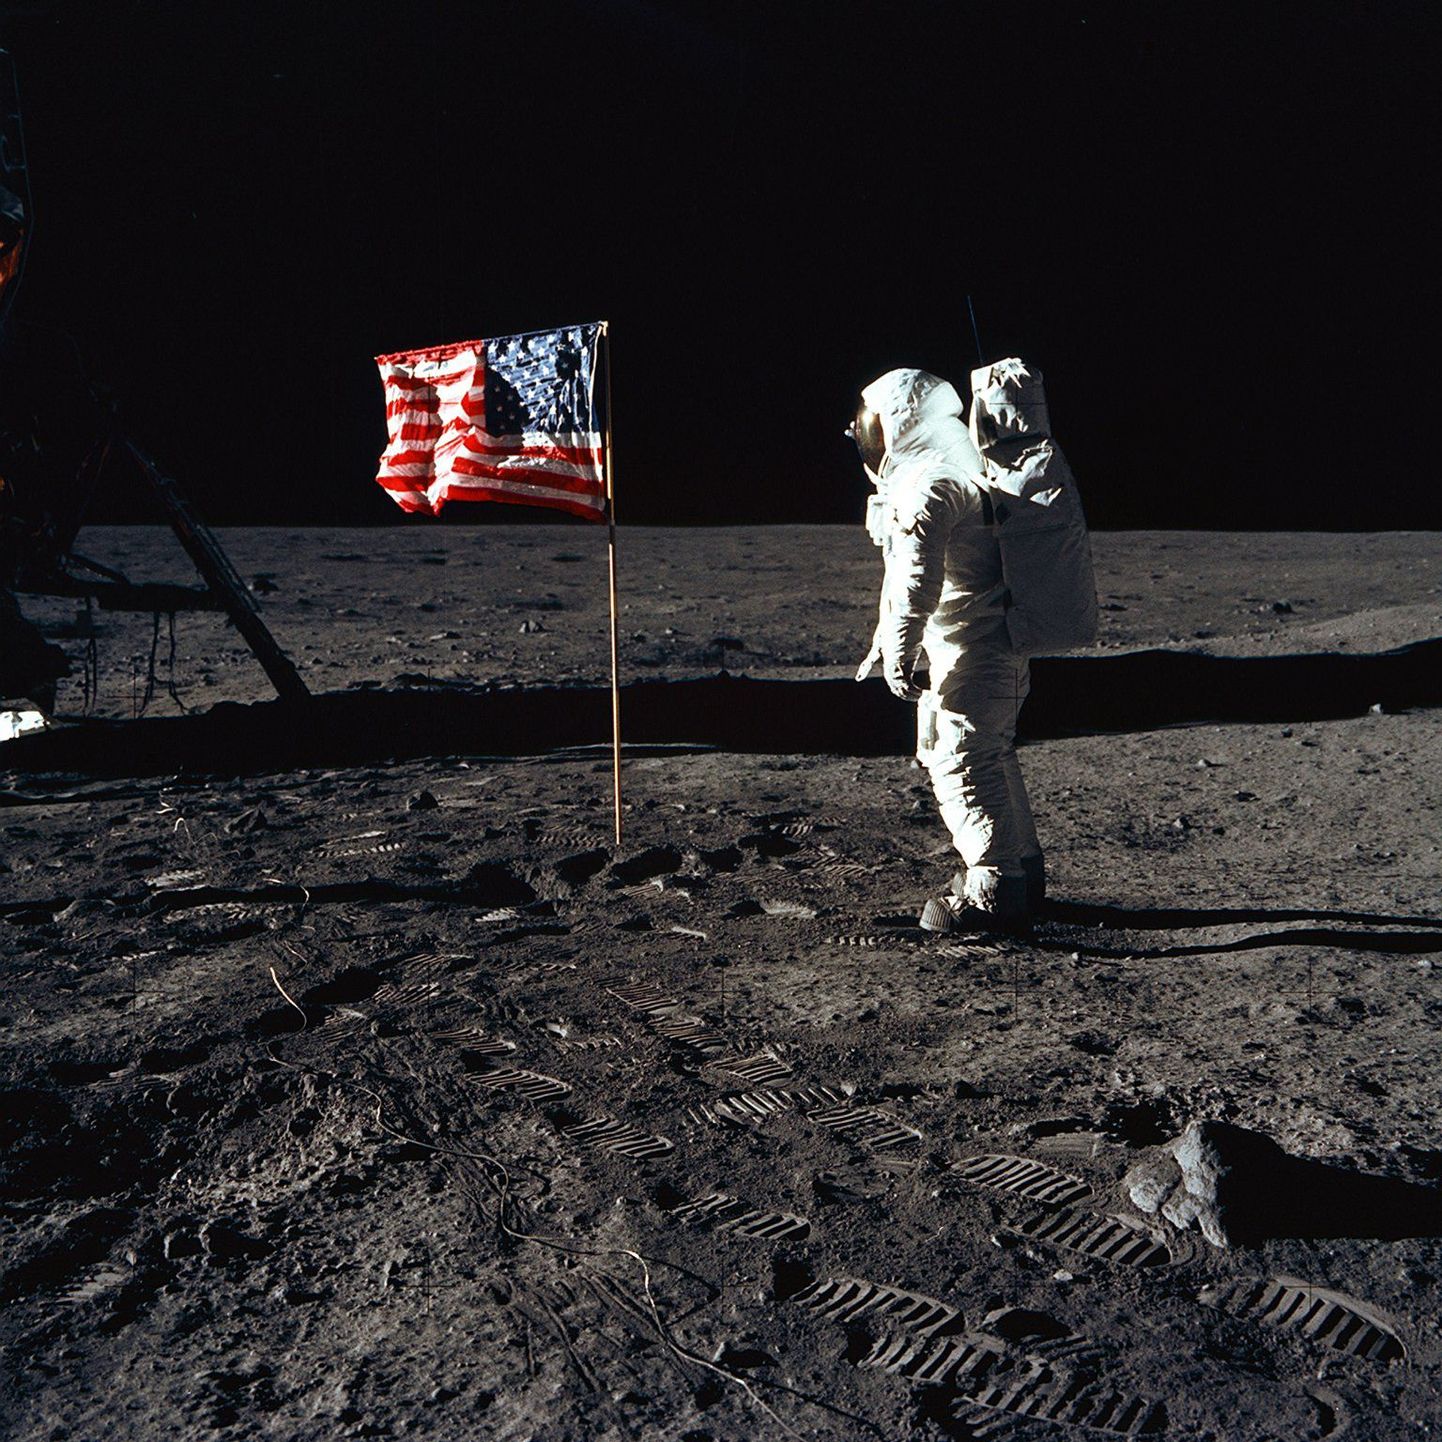 Buzz Aldrin 40 aasta eest Kuule heisatud USA lipu juures. NASA koduleheküljel on kirjas, et tema ja Neil Armstrongi jalajäljed jäävad sinna miljoniks aastaks, sest Kuul pole tuult, mis neid ära puhuks.